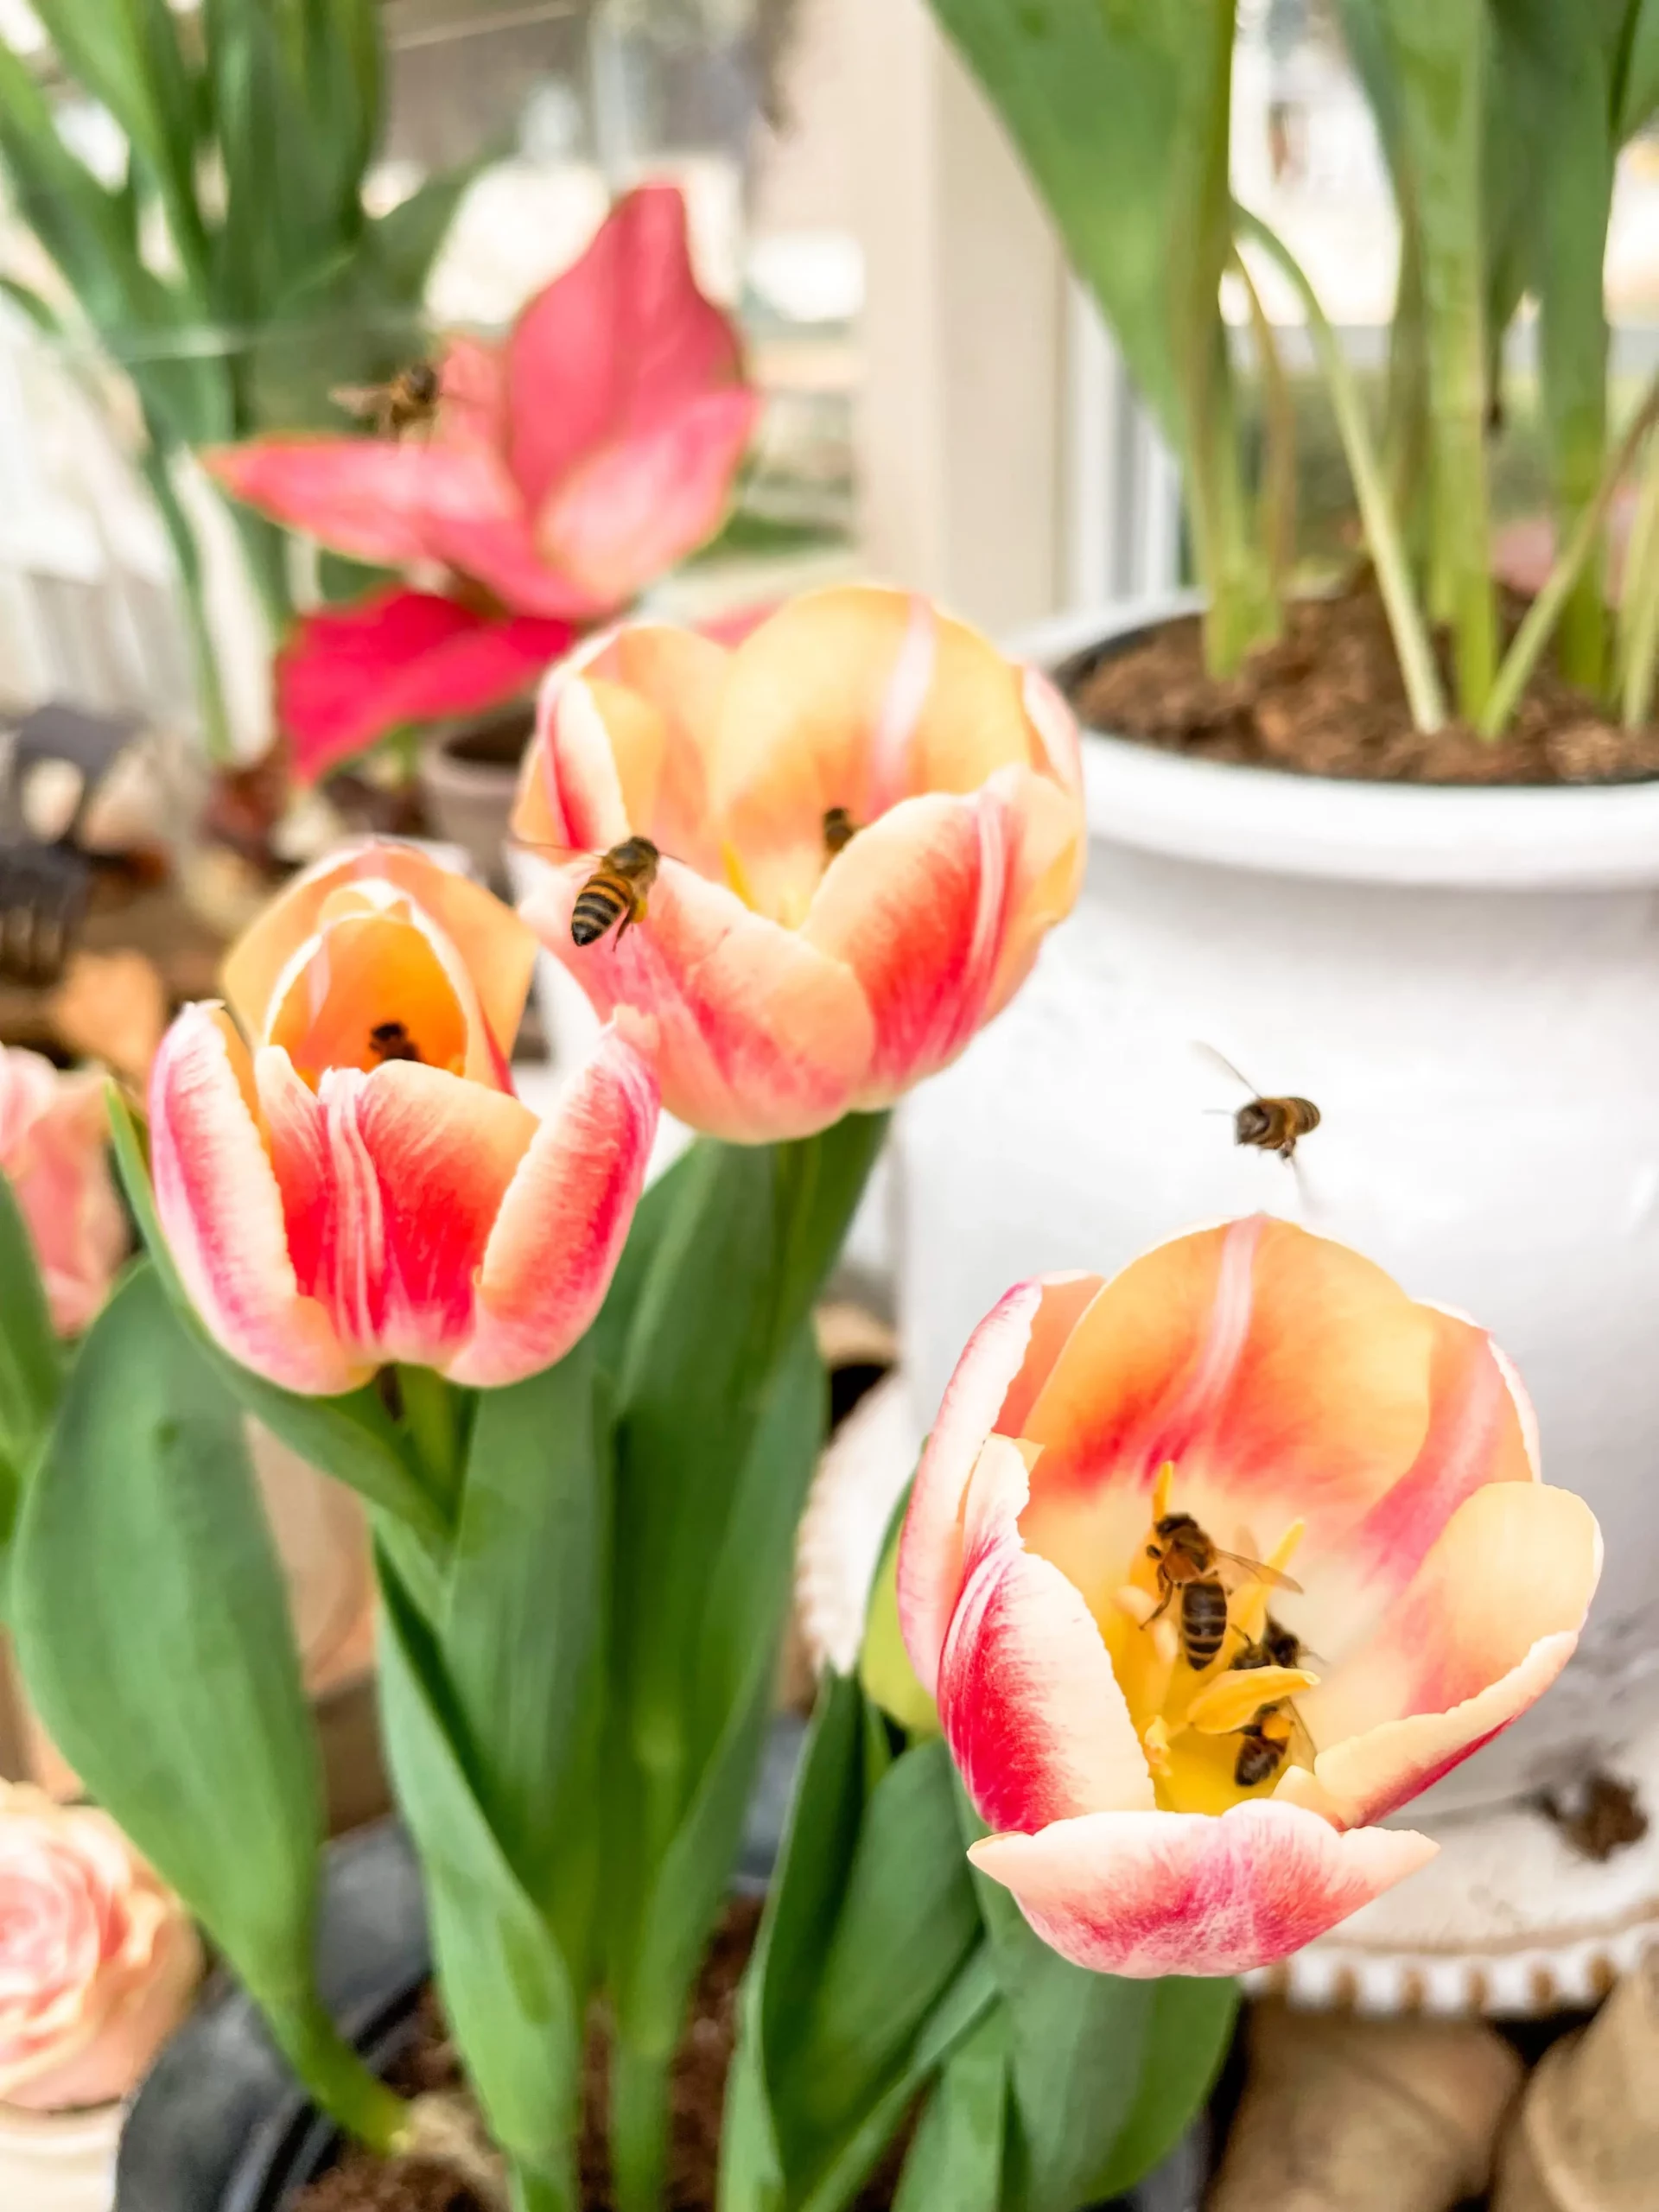 attracting pollinators to your garden